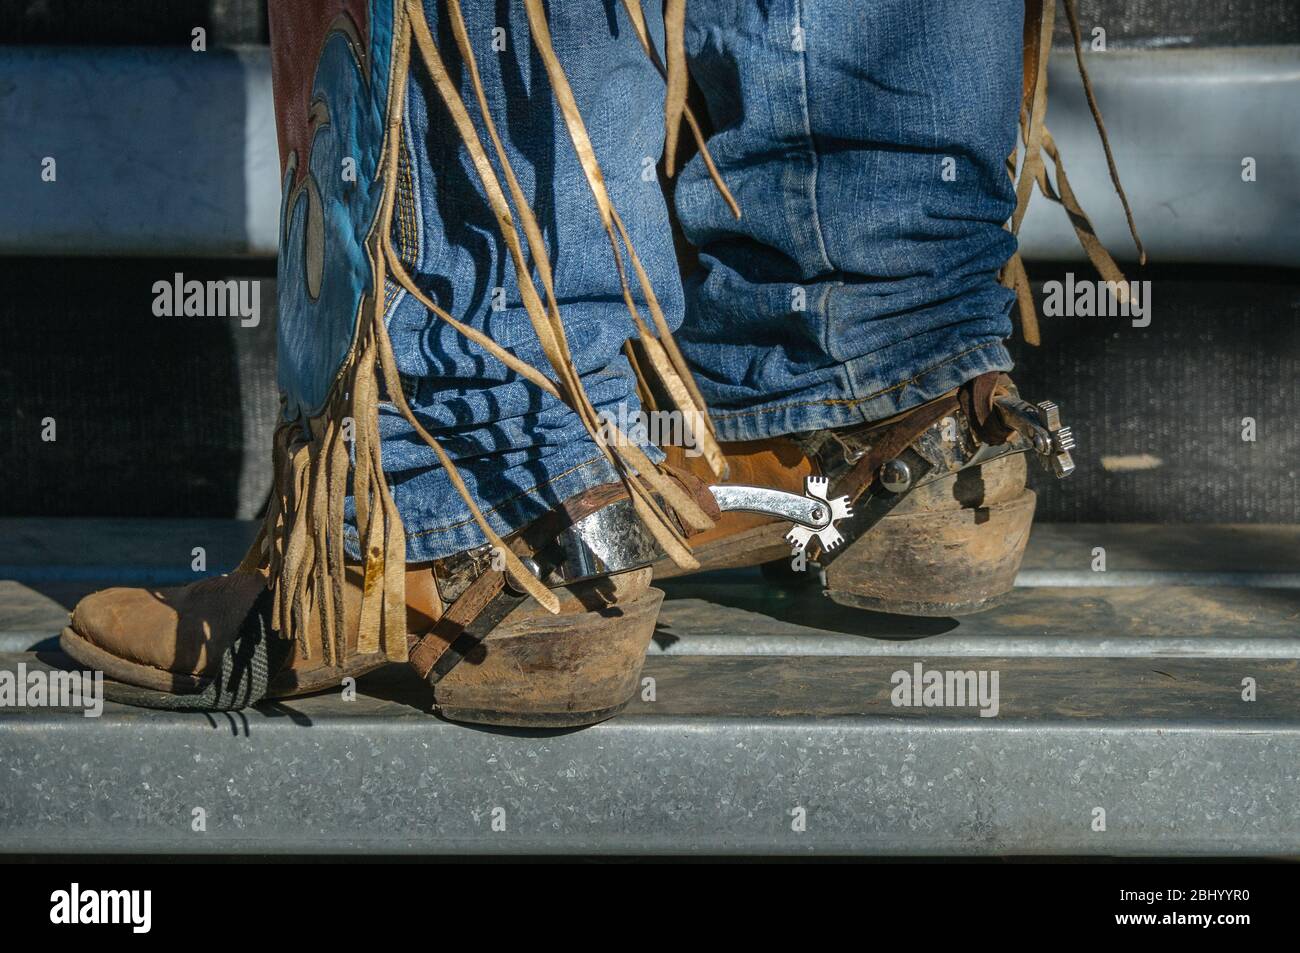 Die Unterschenkel des Rodeo-Reiters mit Jeans, Chaps, Stiefeln und Spornen auf der Plattform auf einer der Rutschen, bereit für seine Fahrt in Mareeba in Australien. Stockfoto